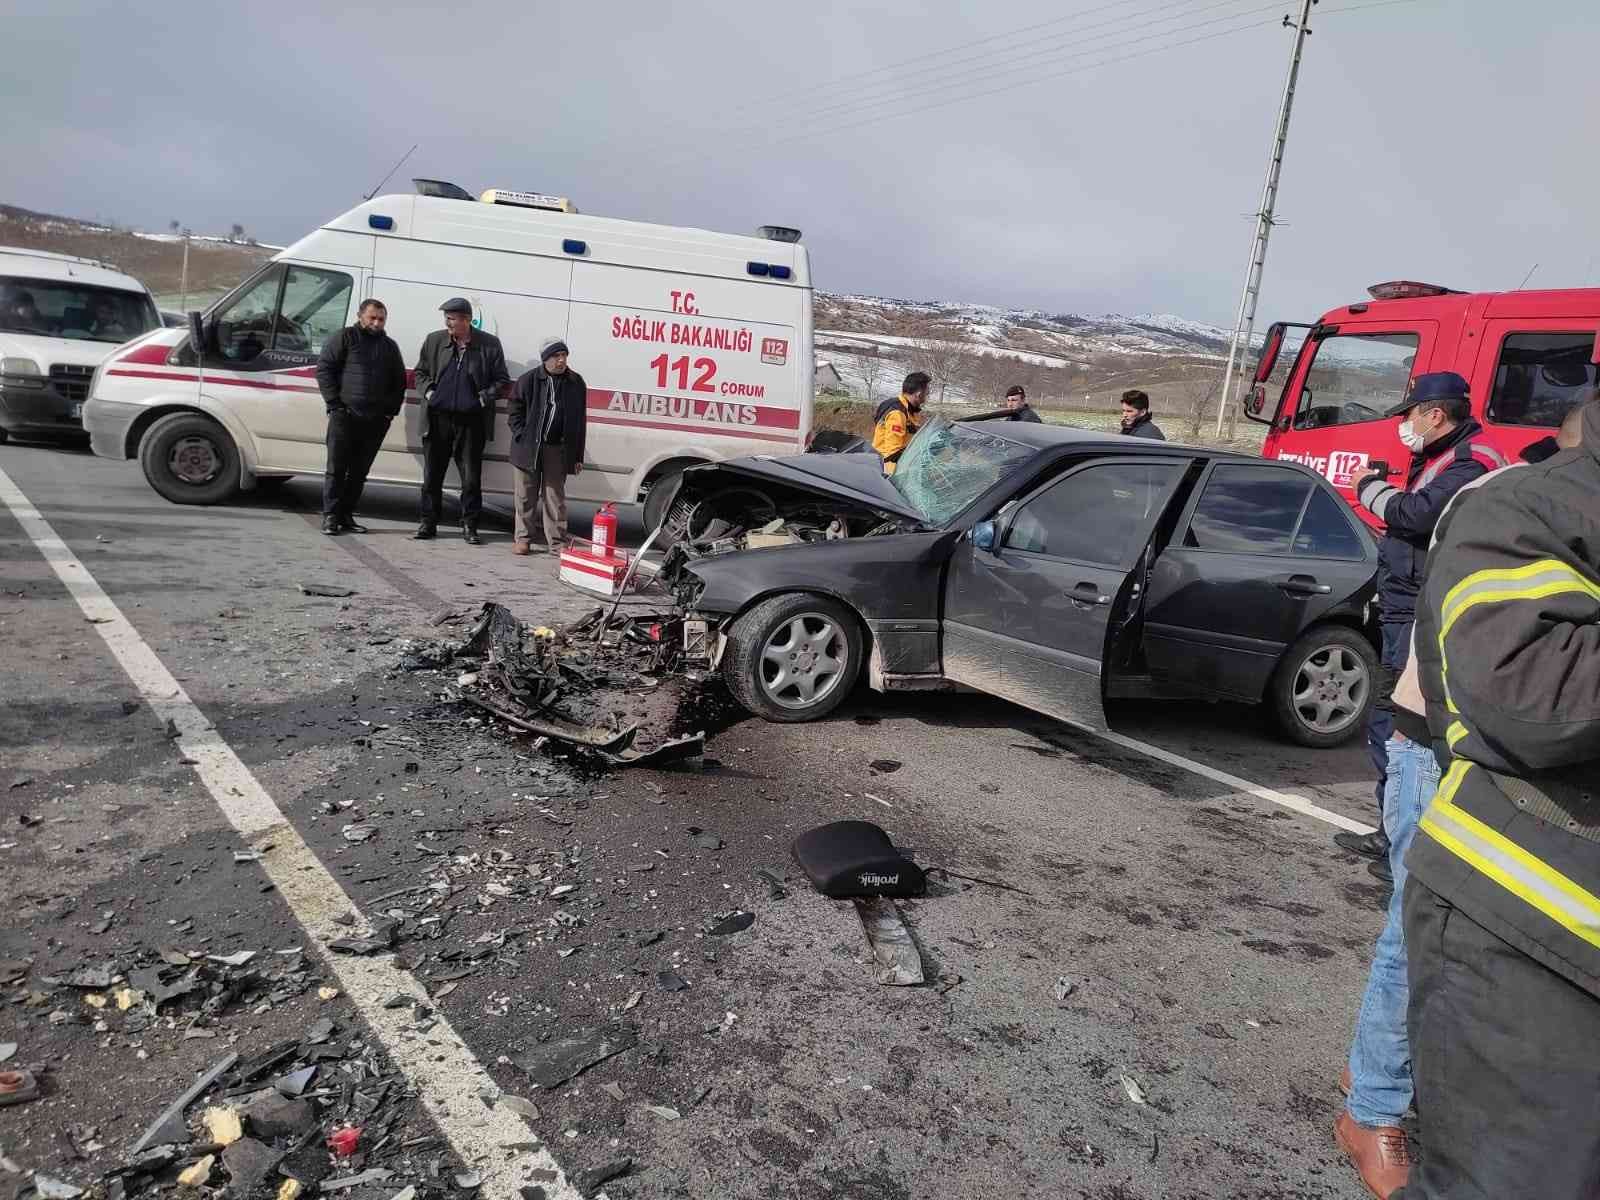 İki otomobil çarpıştı: 1 ölü, 5 yaralı #corum